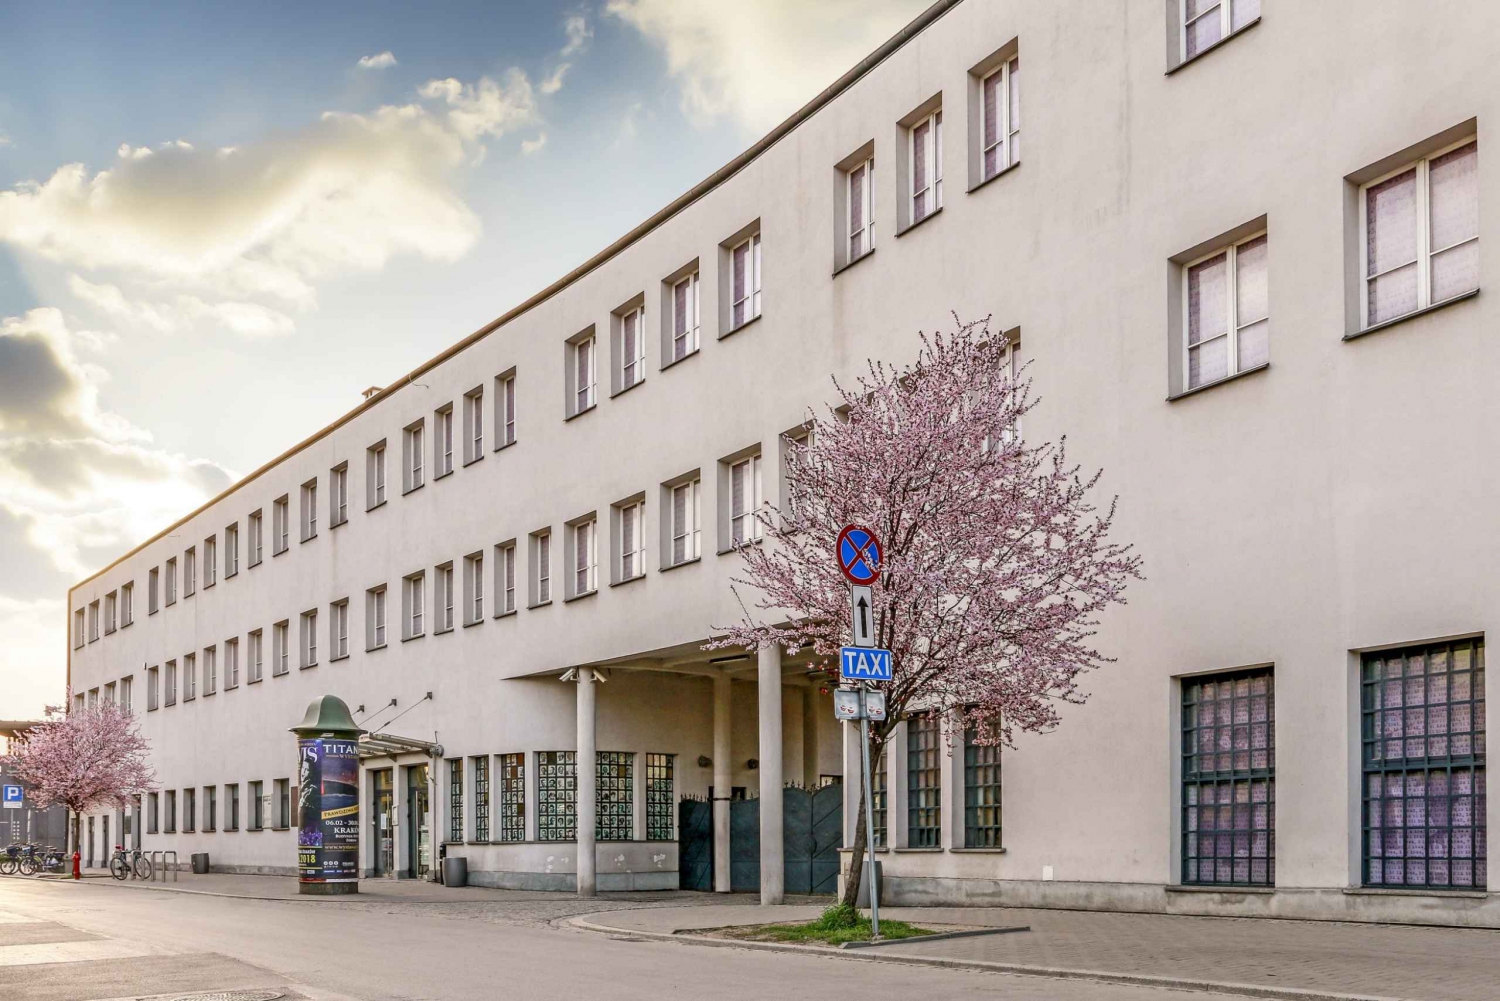 Cracovia: tour guidato del museo della fabbrica di smalti di Oskar Schindler